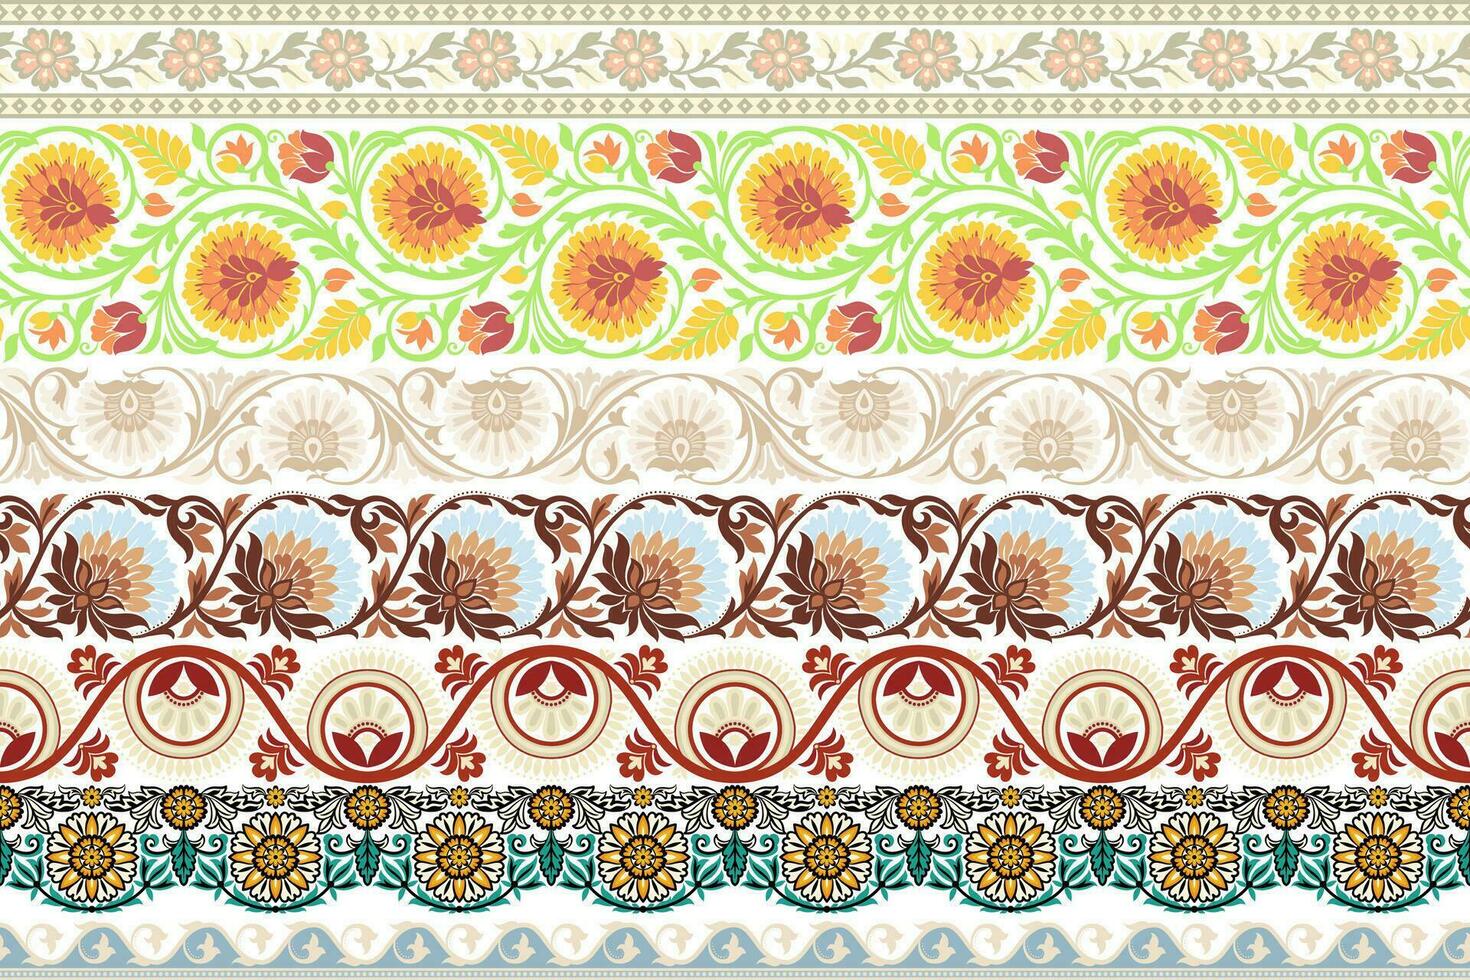 reeks bloemen naadloos achtergrond meetkundig etnisch oosters ikat naadloos patroon traditioneel ontwerp voor achtergrond,tapijt,behang,kleding,inwikkeling,batik,stof illustratie borduurwerk stijl. vector